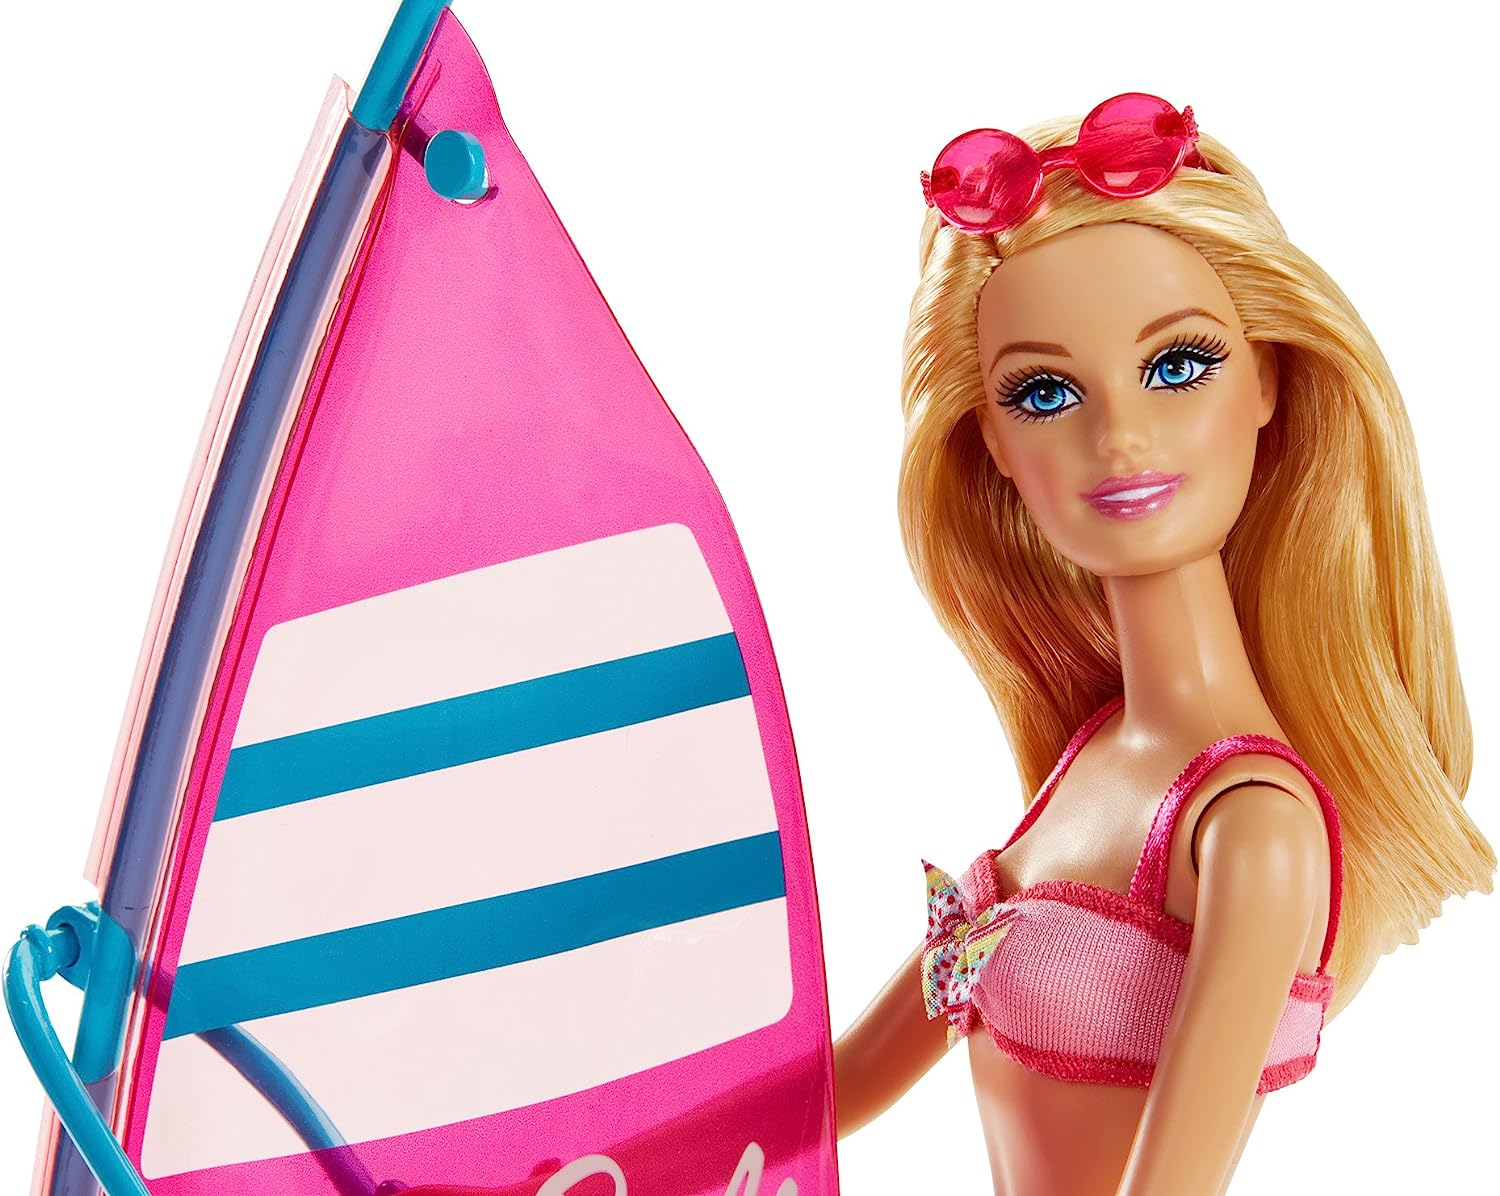 激安商品 バービー バービー人形 Ccv23 アクセサリ プレイセット 日本未発売 バービー人形 Dollバービー Windsurfing Go Lets Barbie Ccv23 アクセサリ プレイセット 日本未発売 着せ替え人形 Water Gov Ge